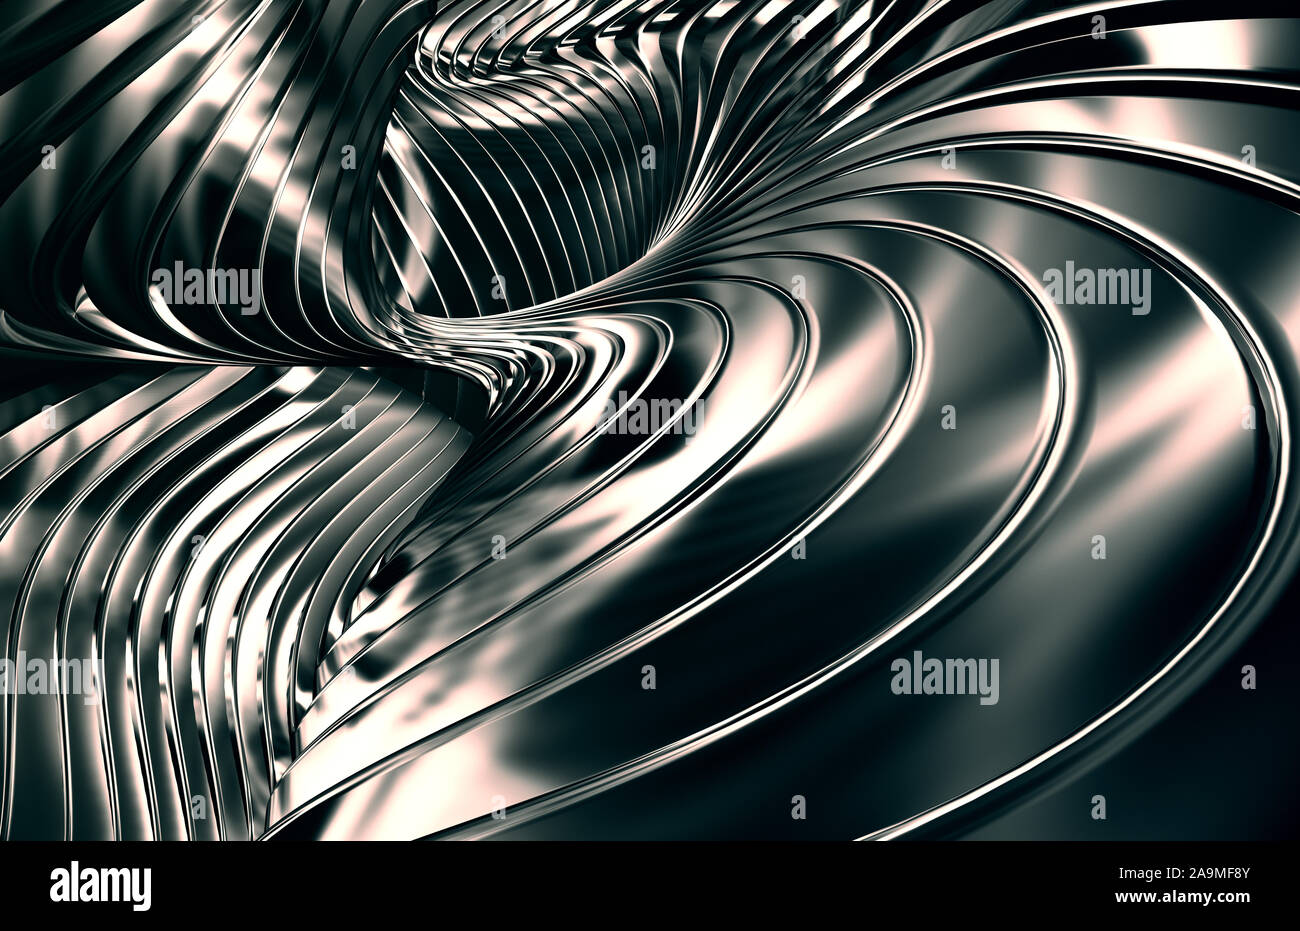 Résumé fond métal futuriste. L'irréel des formes de bandes noires. 3D Illustration. Banque D'Images